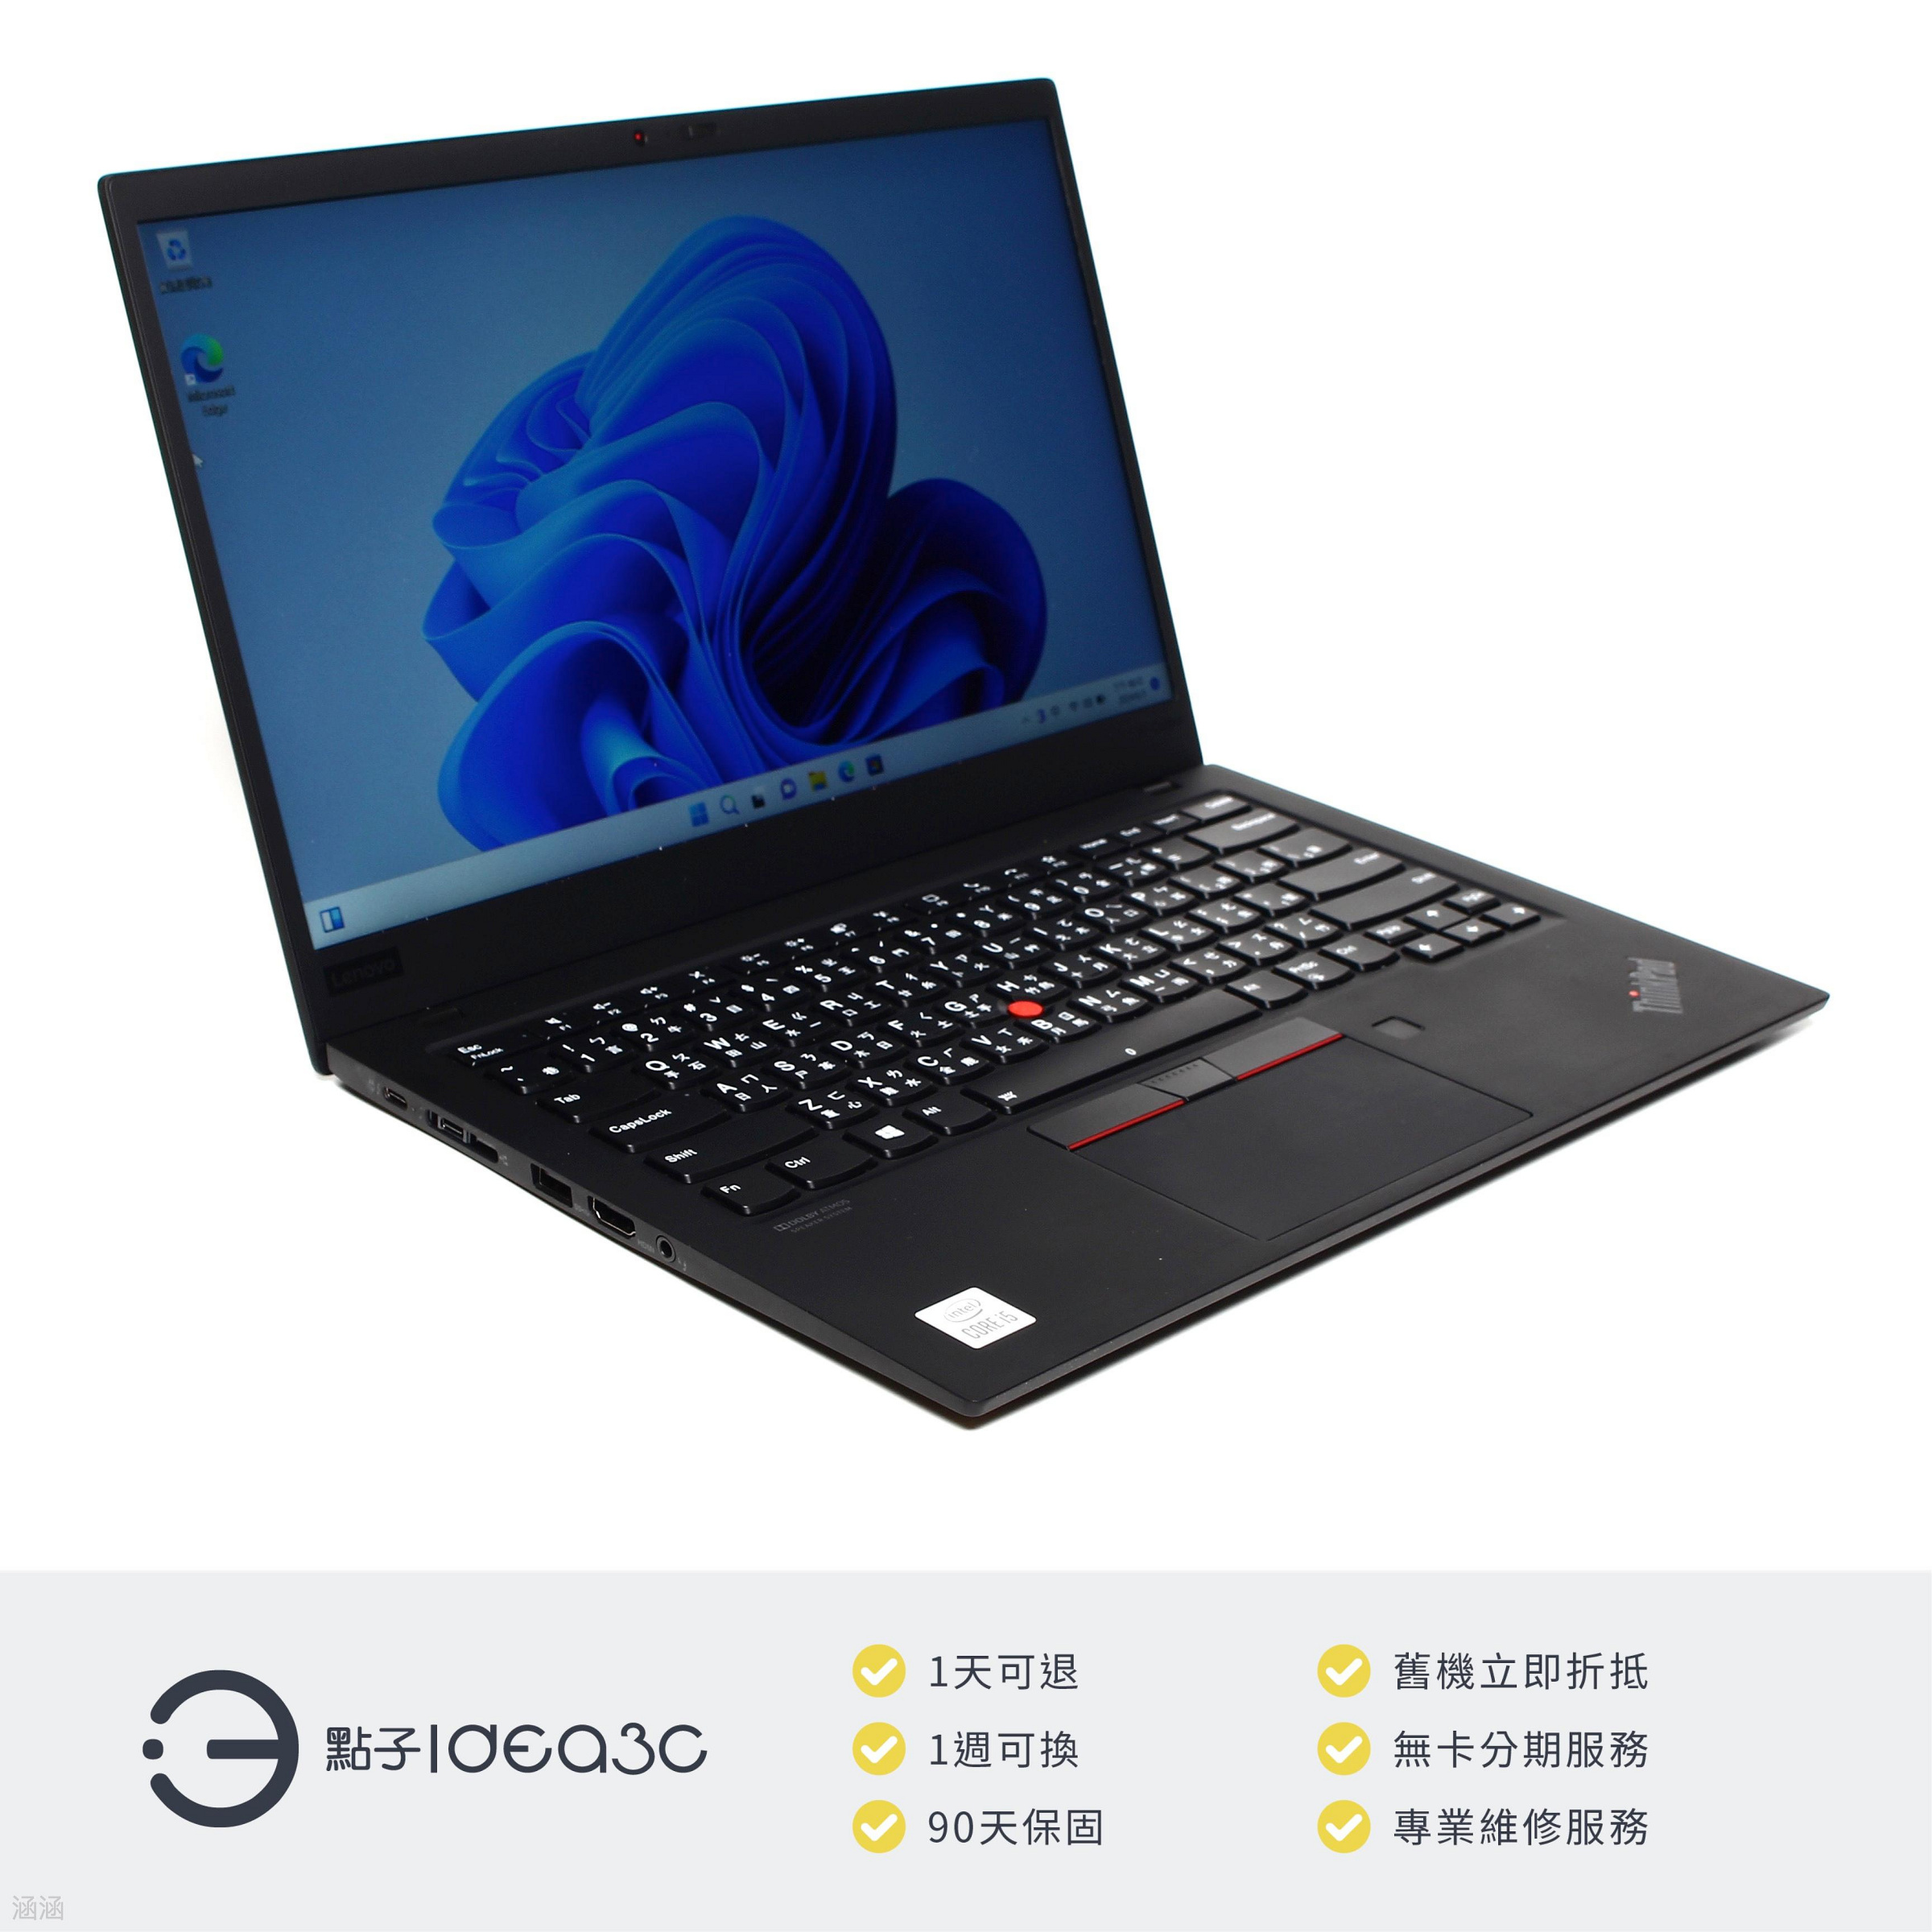 「點子3C」Lenovo ThinkPad X1 Carbon Gen 8 14吋 i5-10210U【店保3個月】16G 512G SSD 內顯 DN143